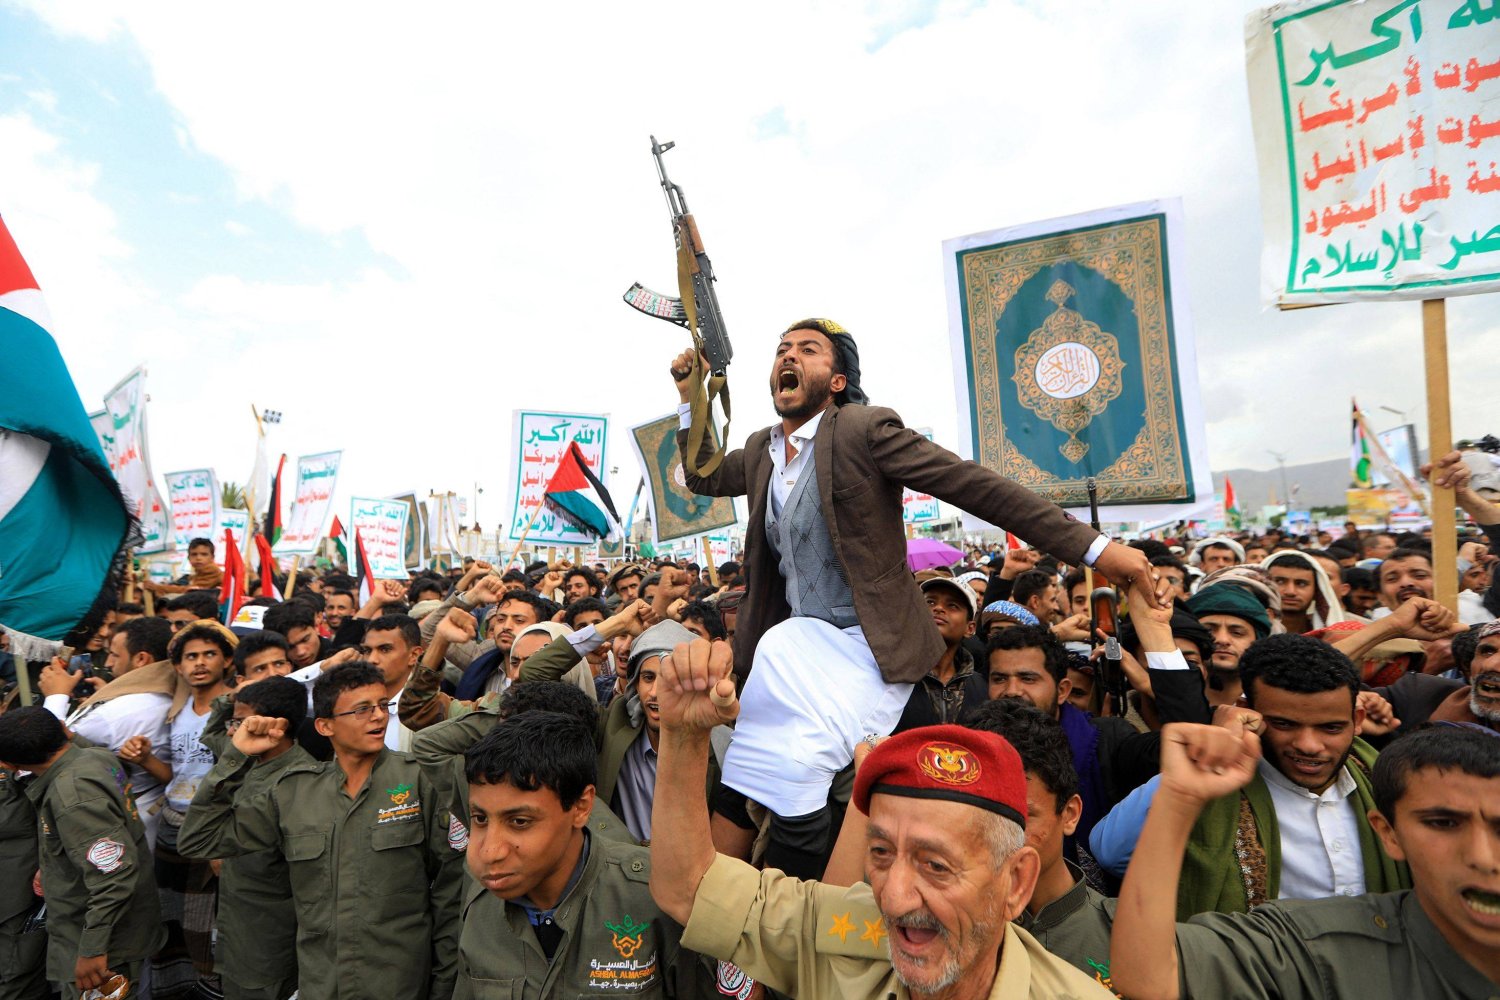 دبلوماسي أوروبي يصف الحوثيين بهذا الوصف.. وصحفي يمني يرد